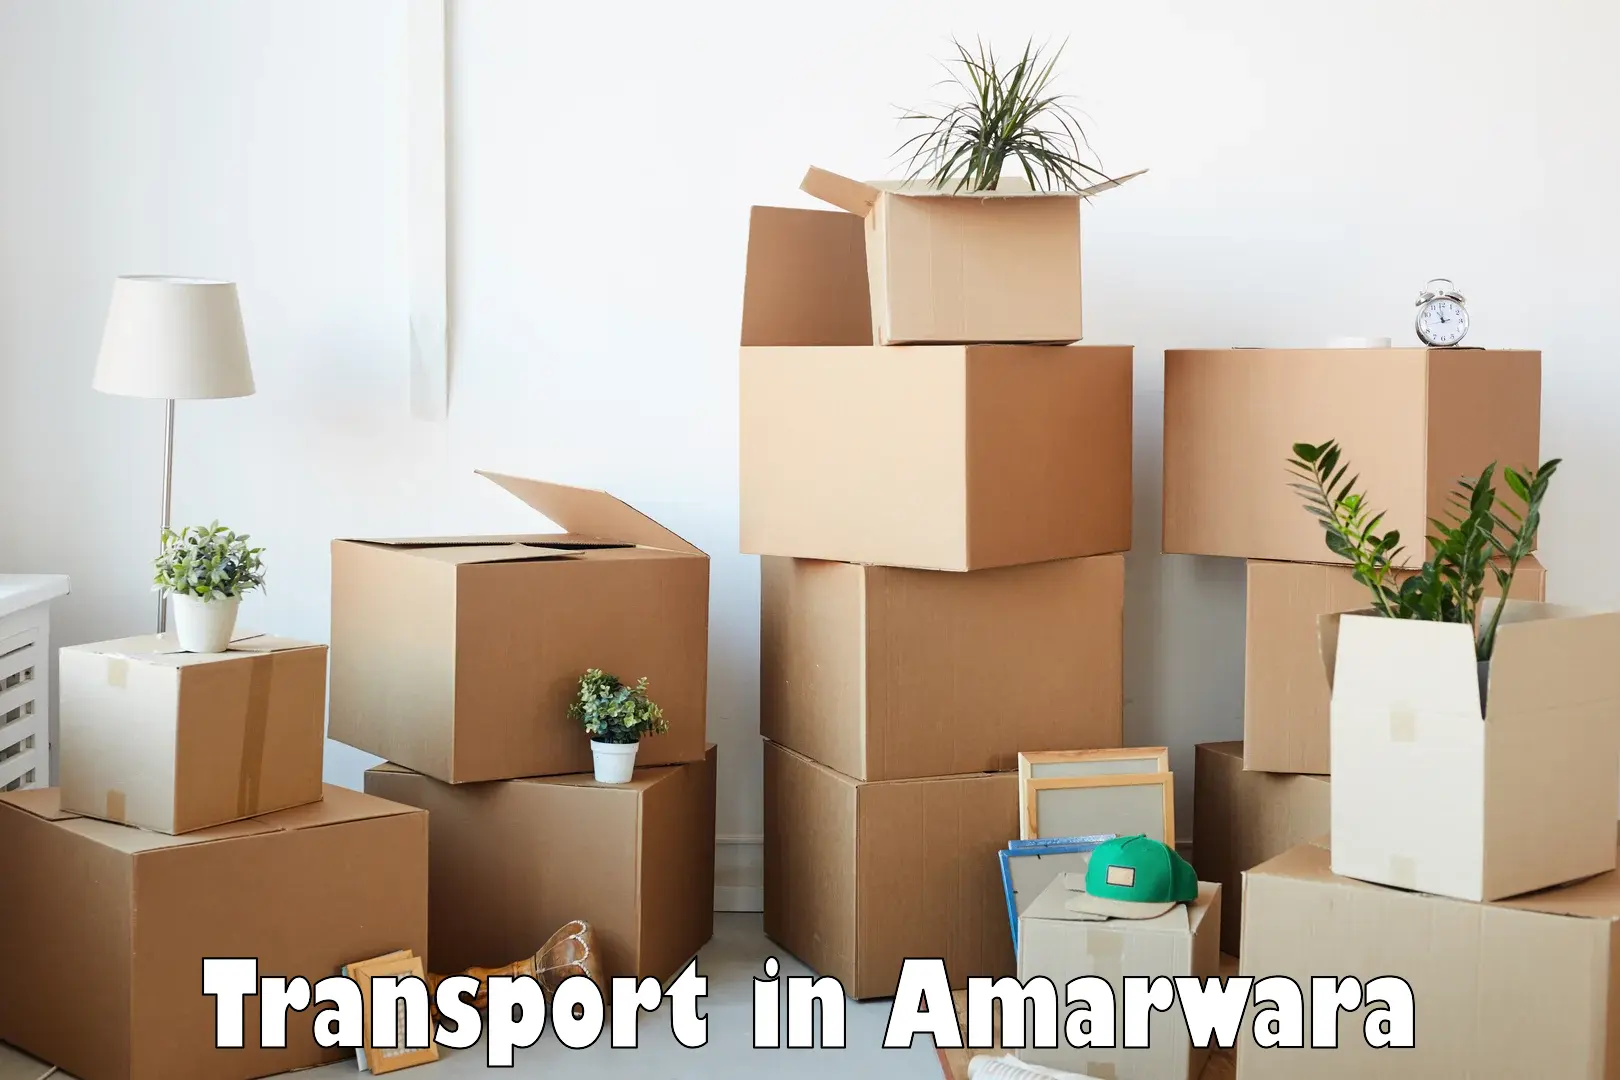 Nationwide transport services in Amarwara